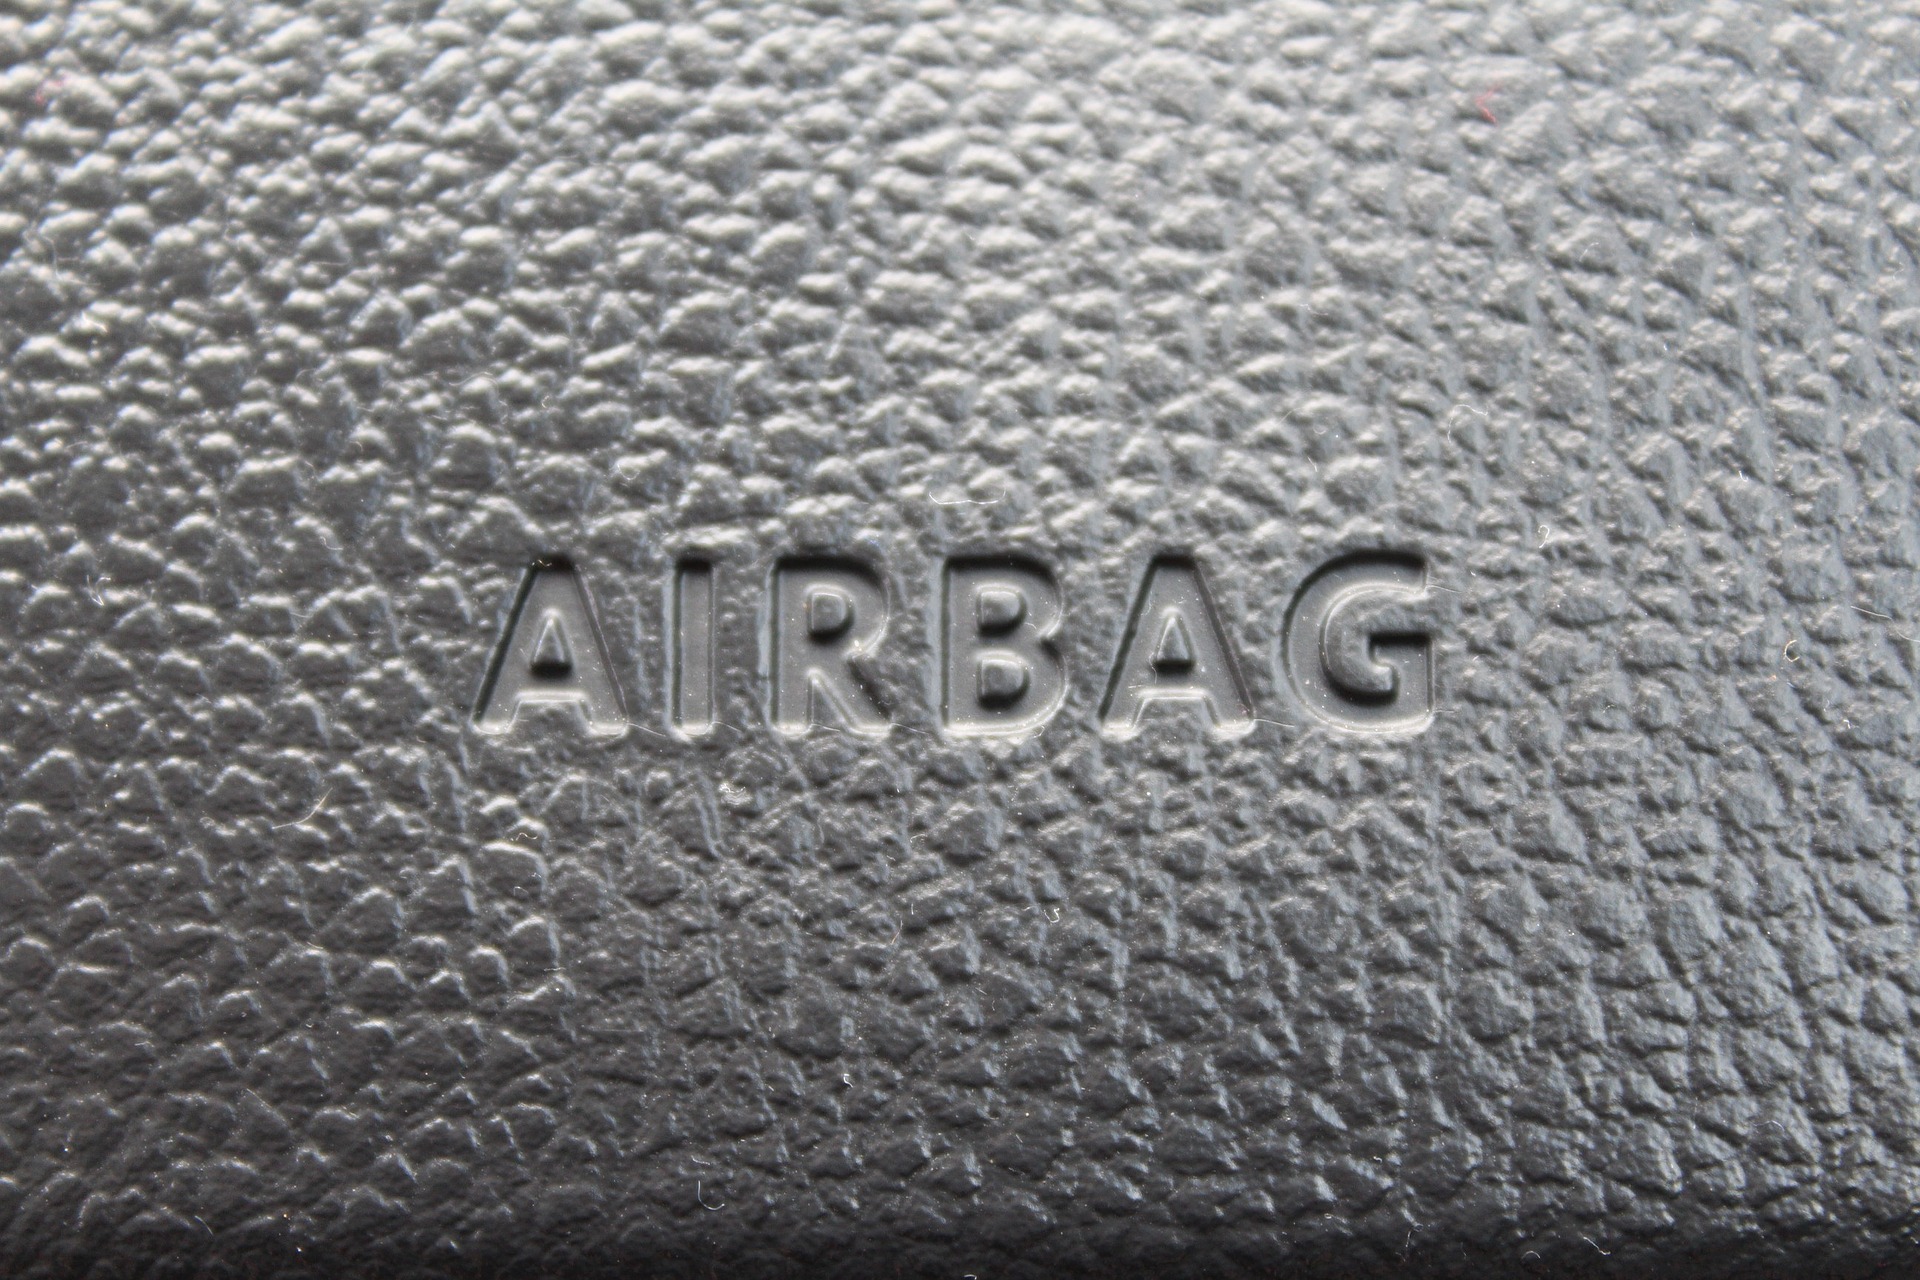 La importancia de los Airbags